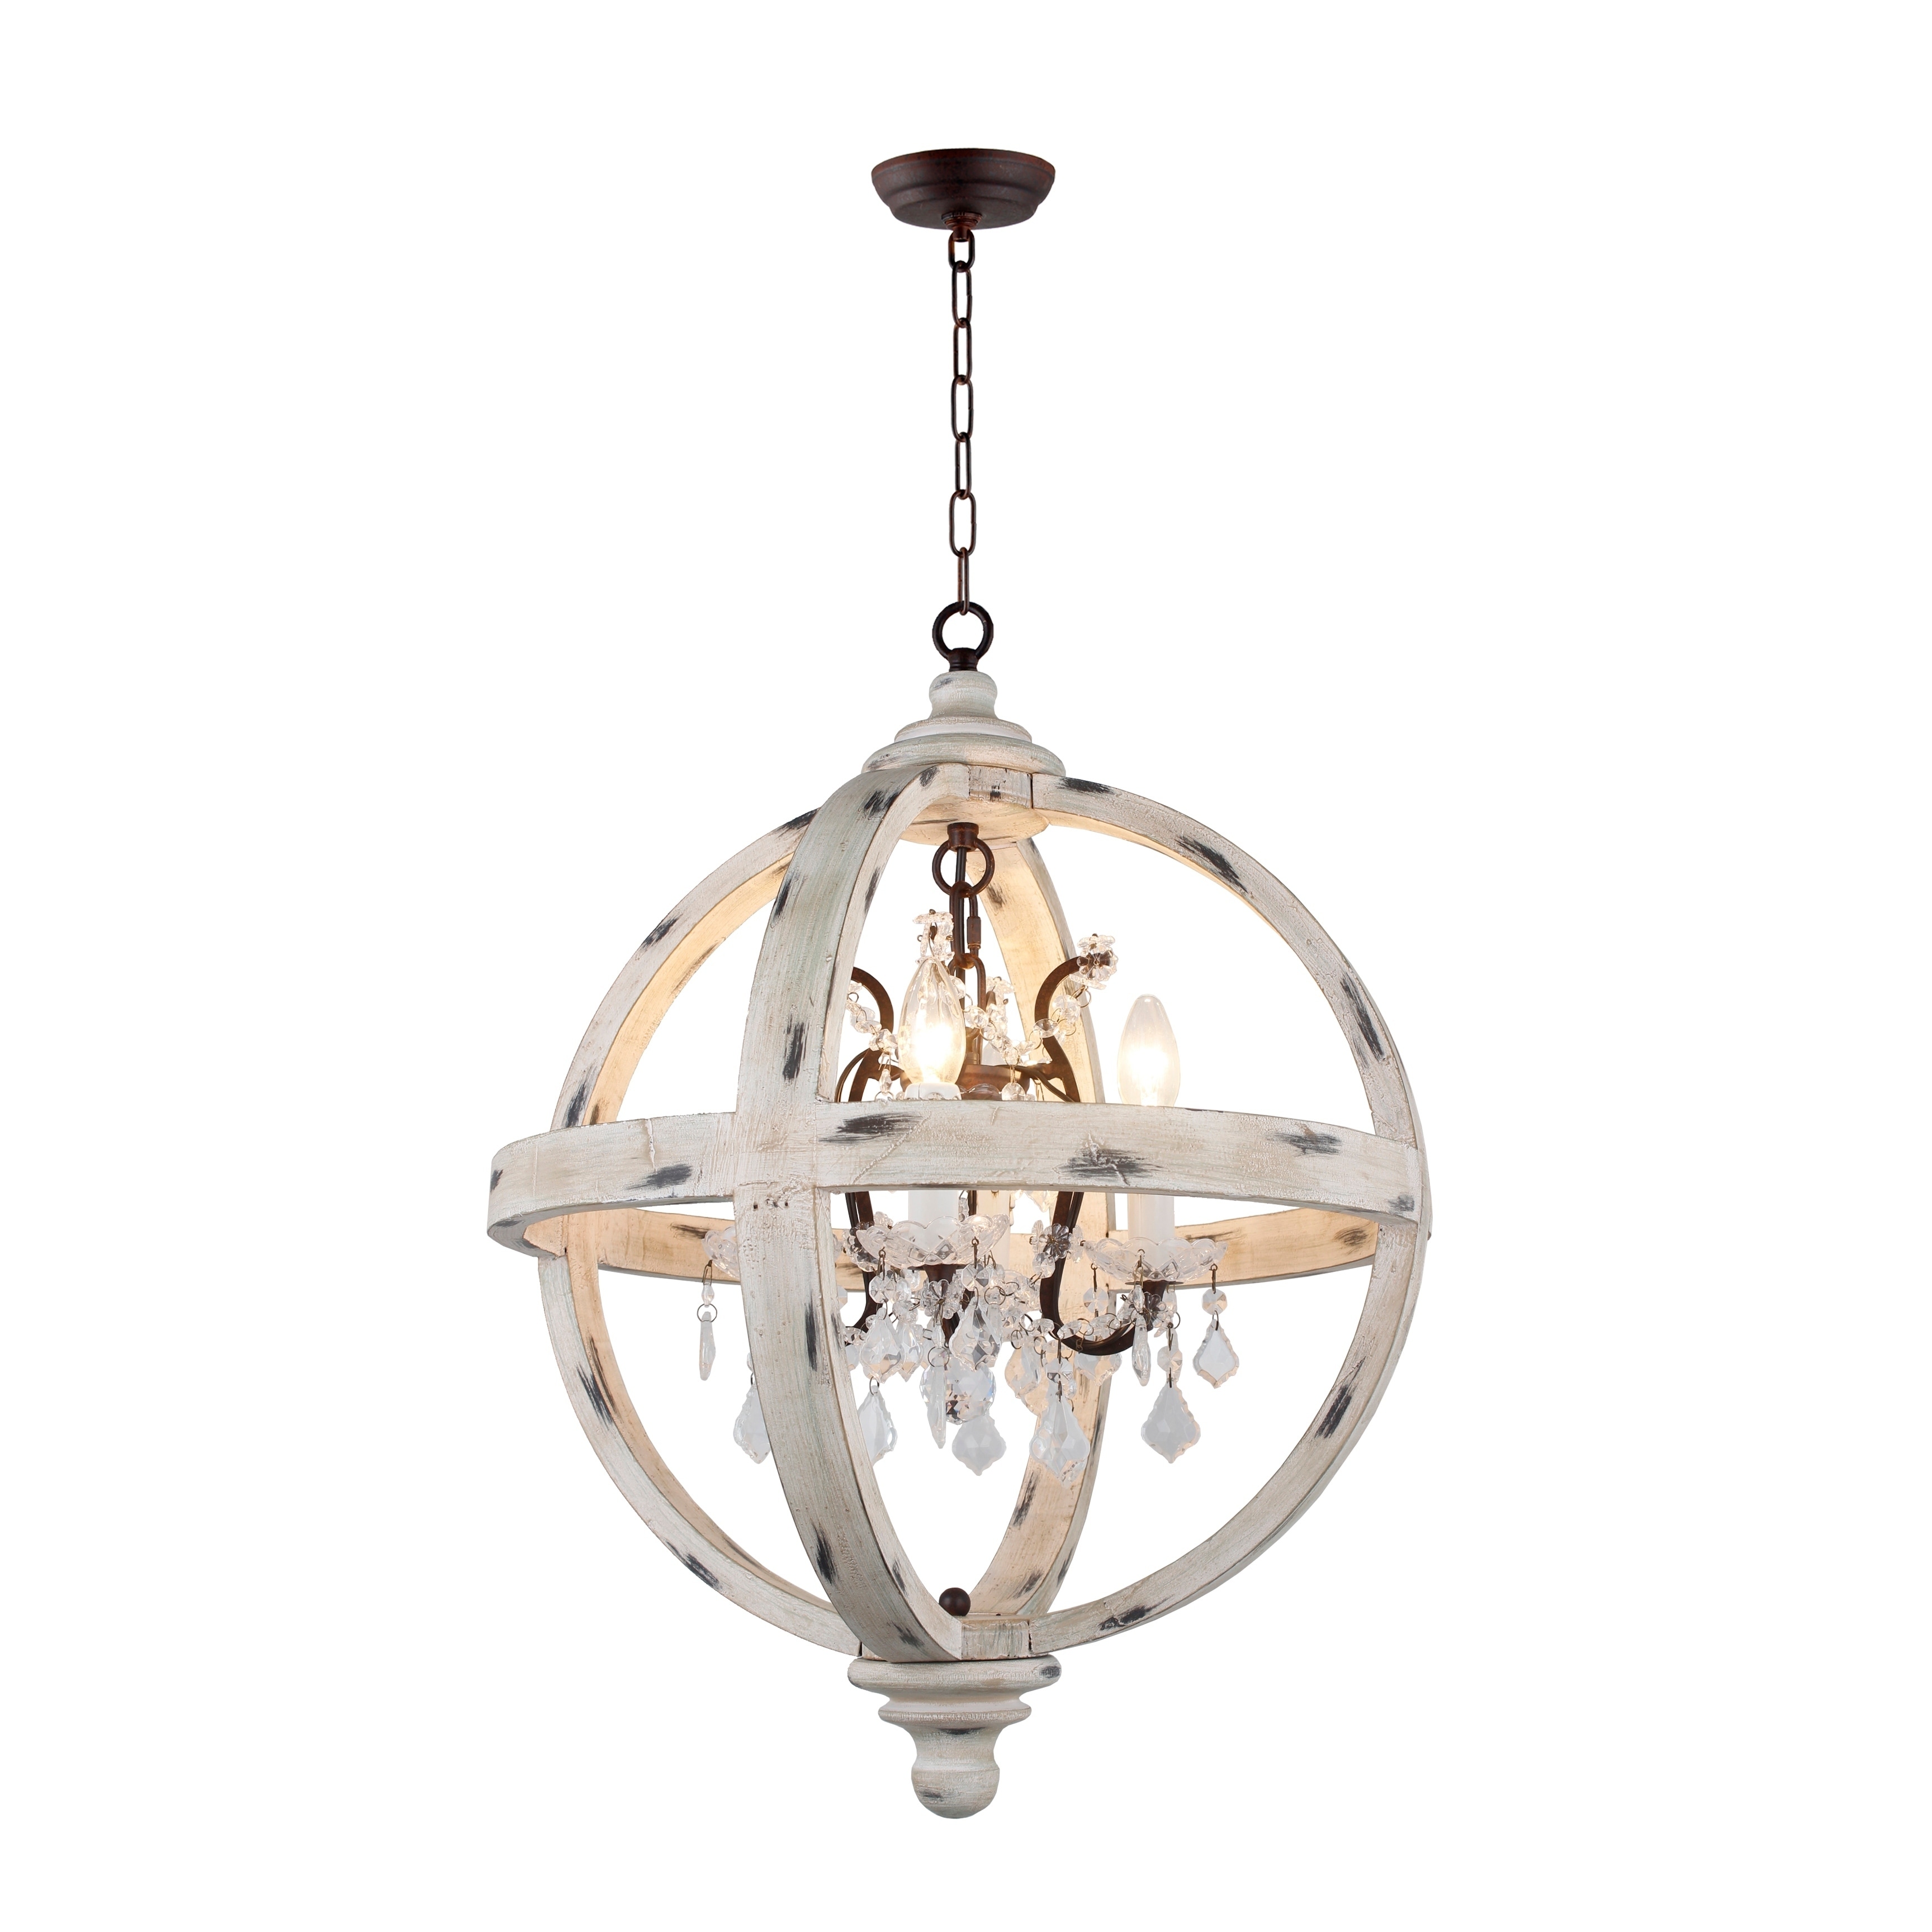 Wood globe chandelier